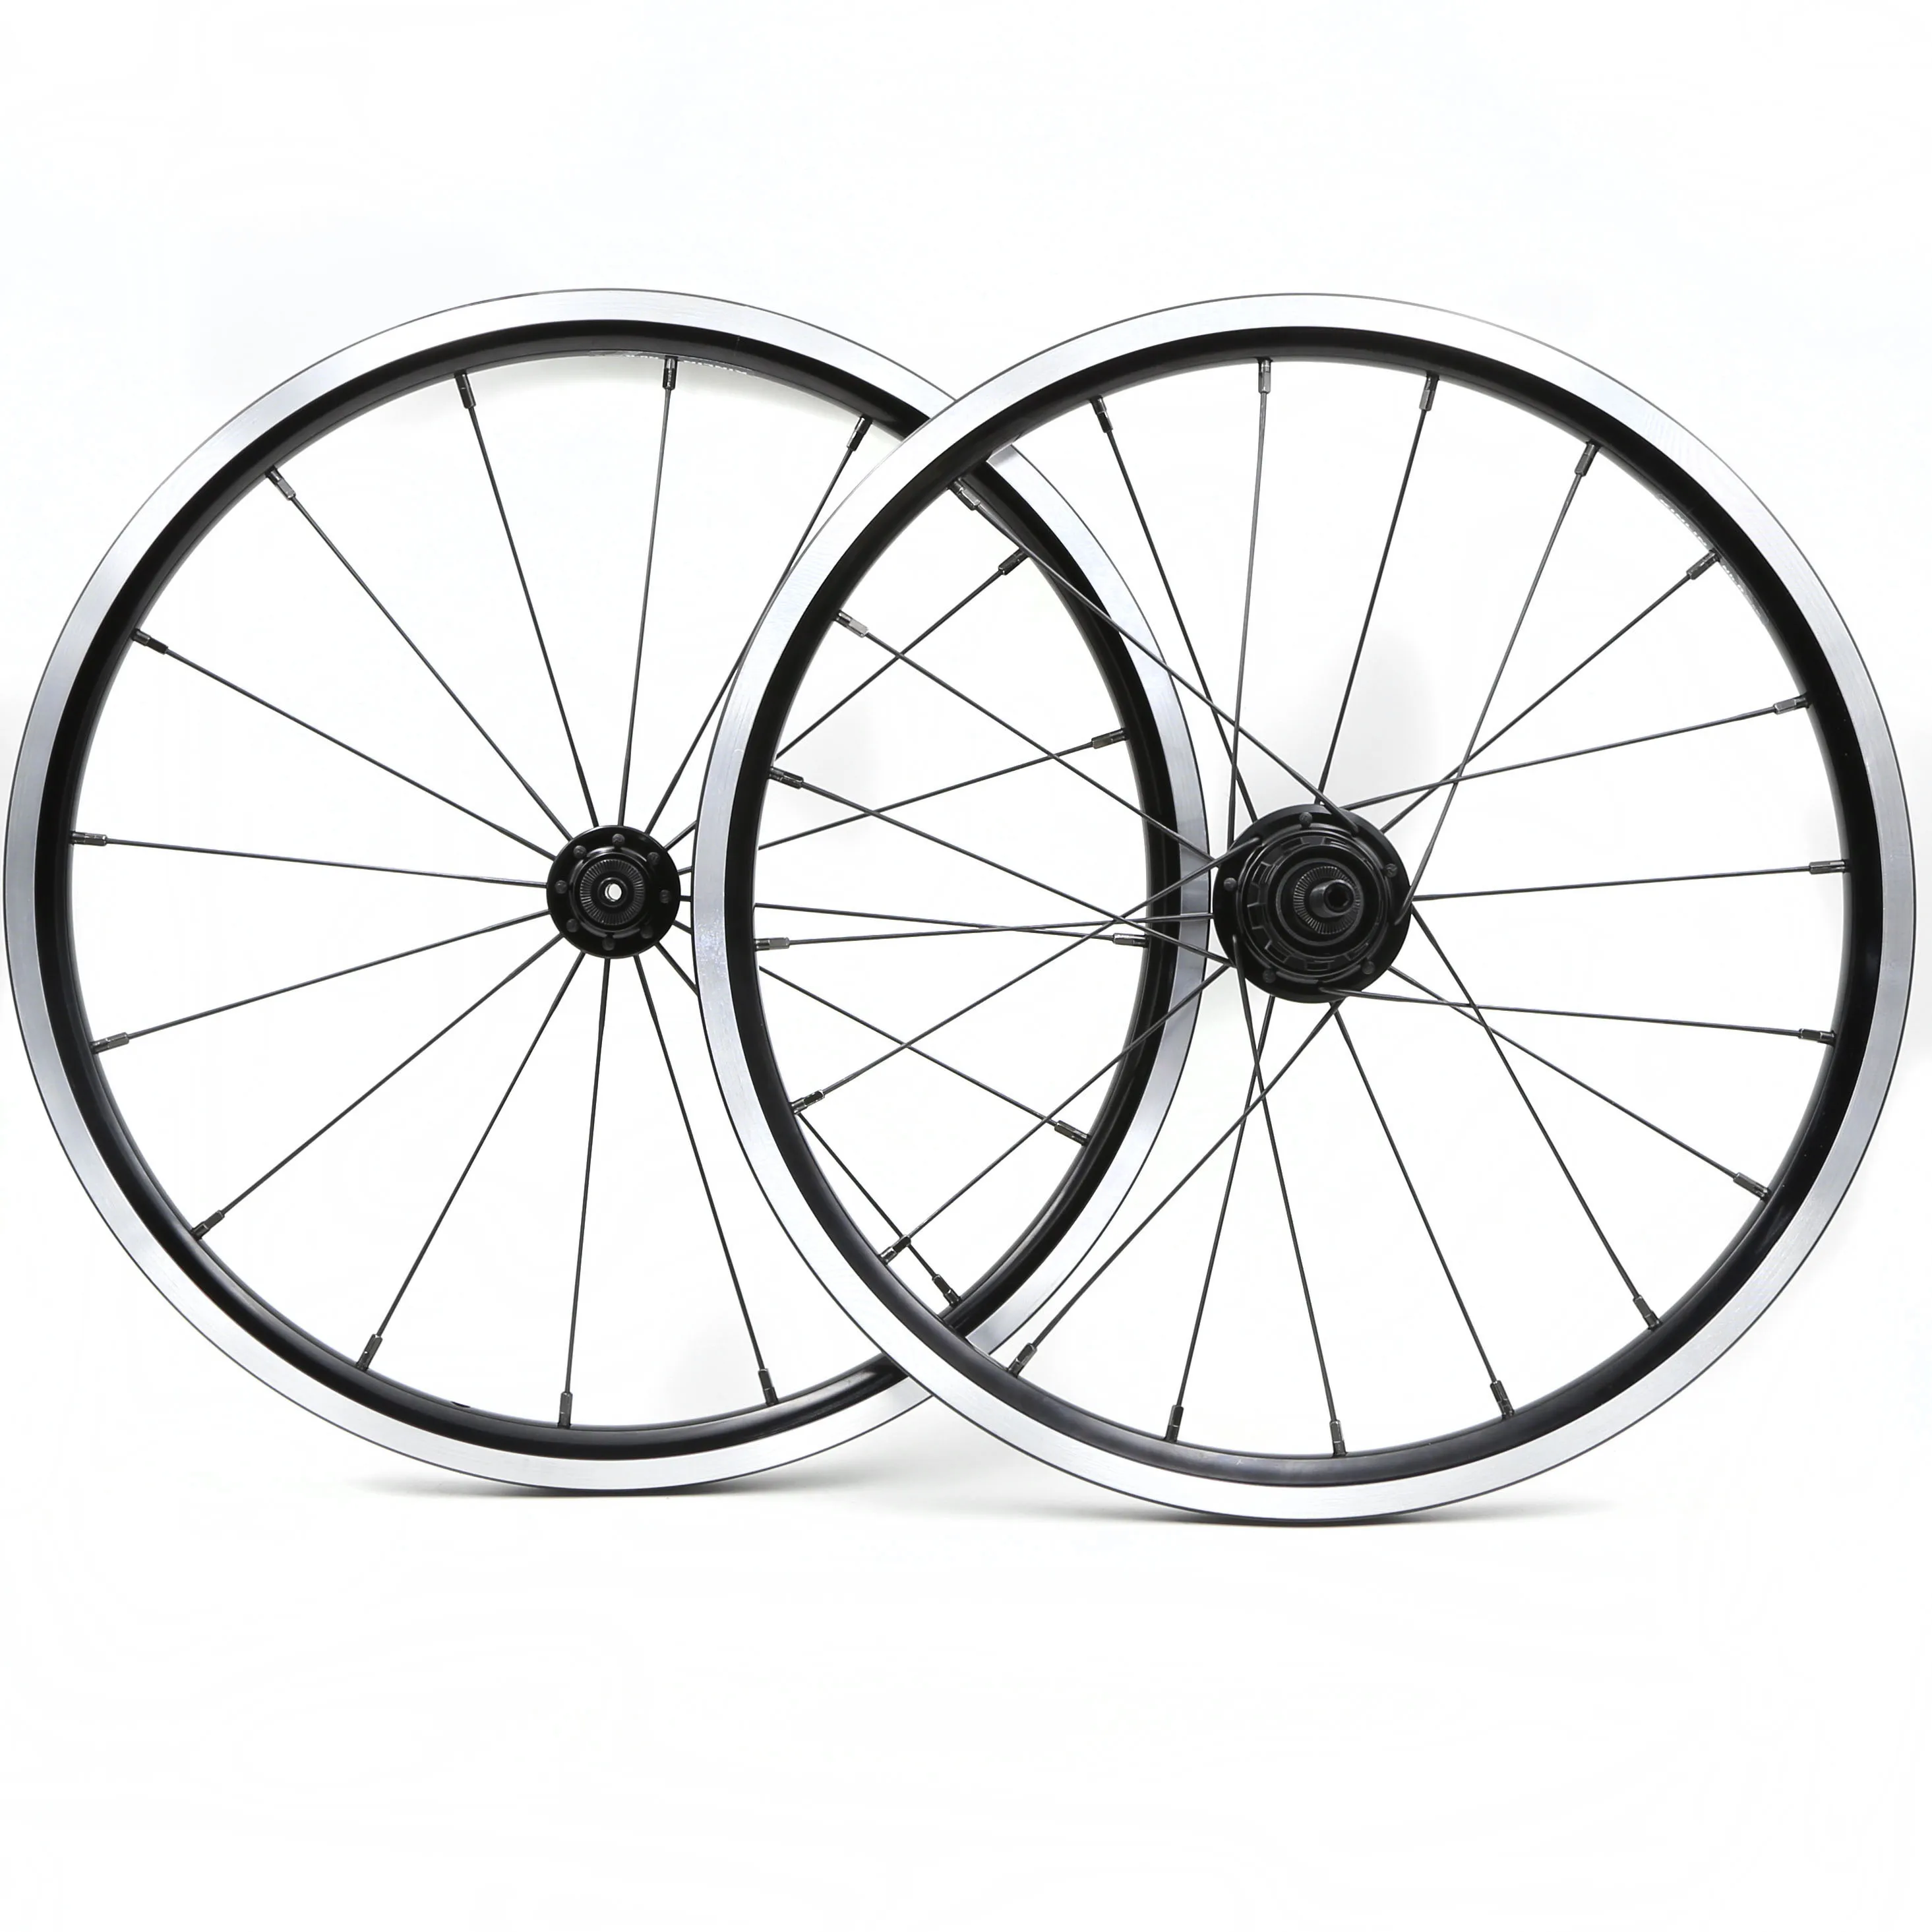 Фирменная Новинка 16x1 3/"(349) серебро/черный 2/3/4/5 скоростей комплект легких колес весом 16/20 отверстие для велосипеда Brompton